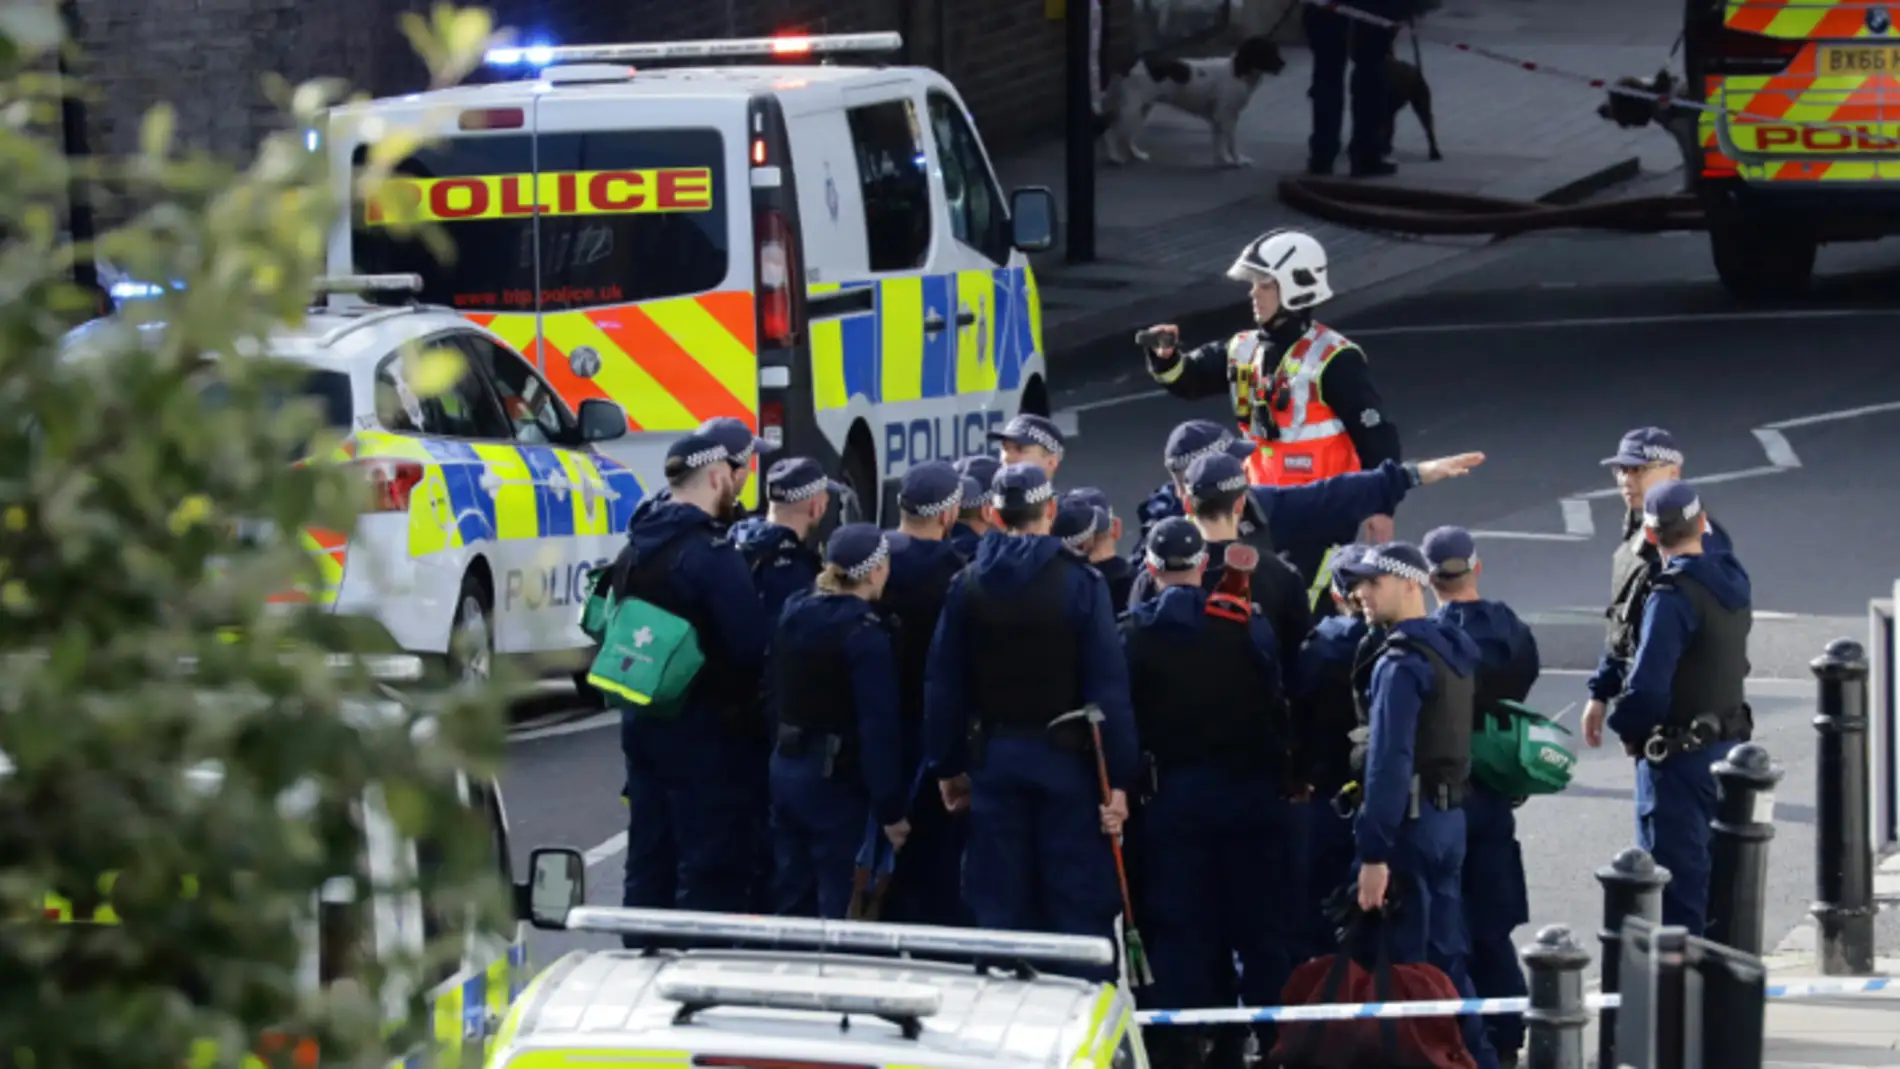 Despliegue policial tras explosión en Londres 